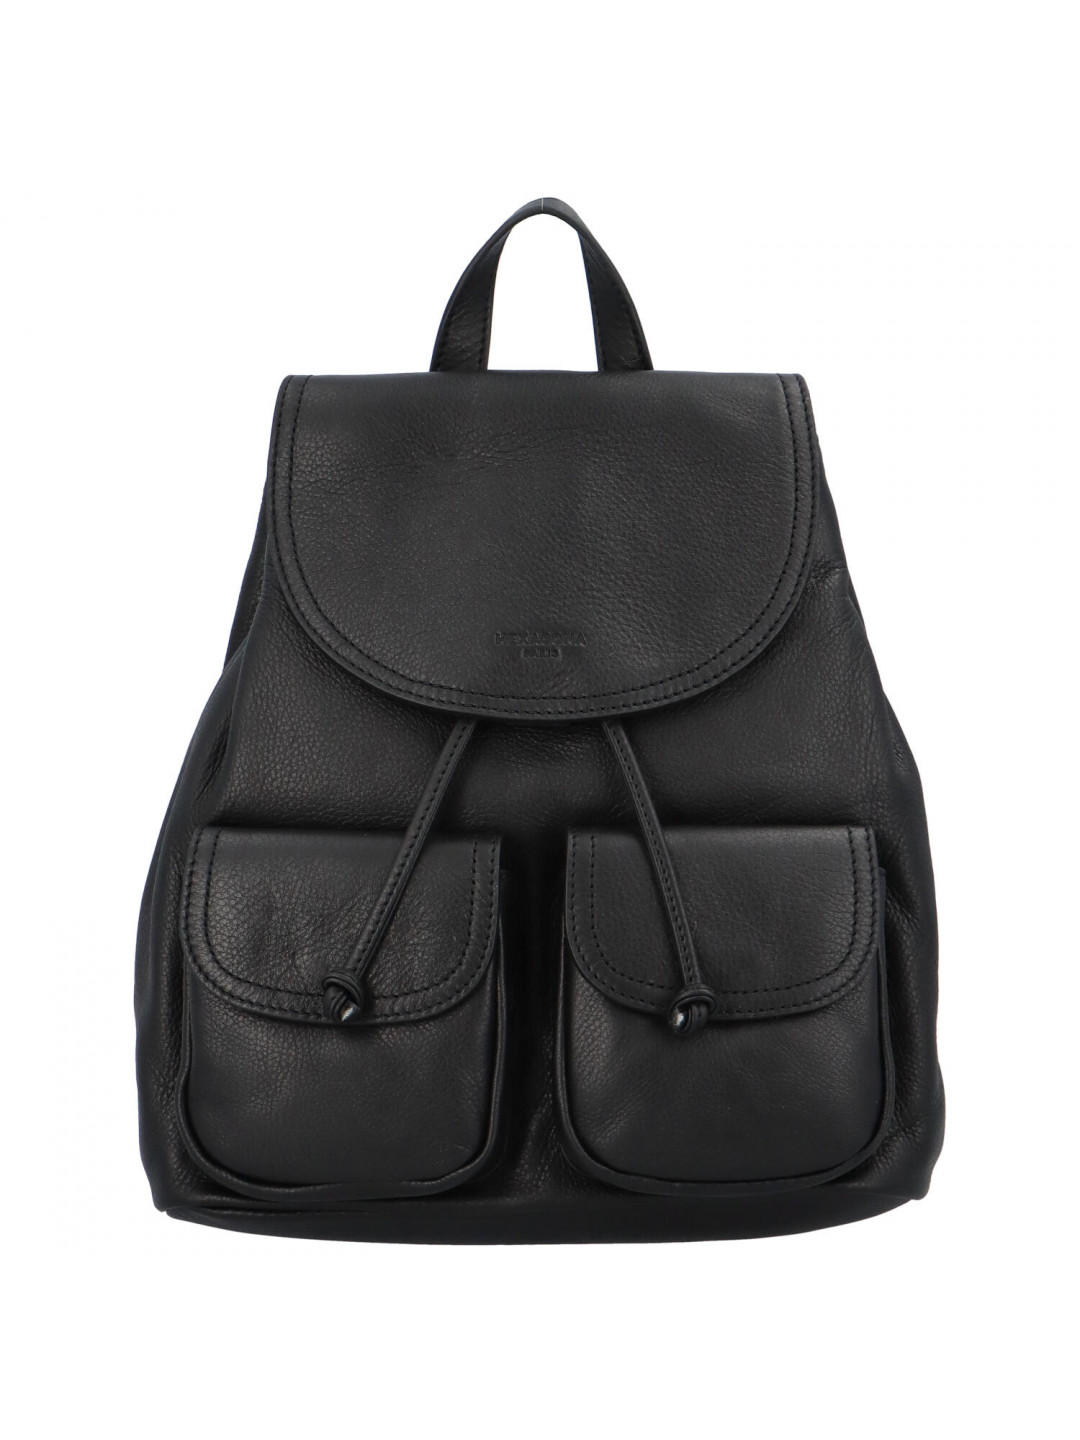 Luxusní dámský kožený batoh černý – Hexagona Doulinq